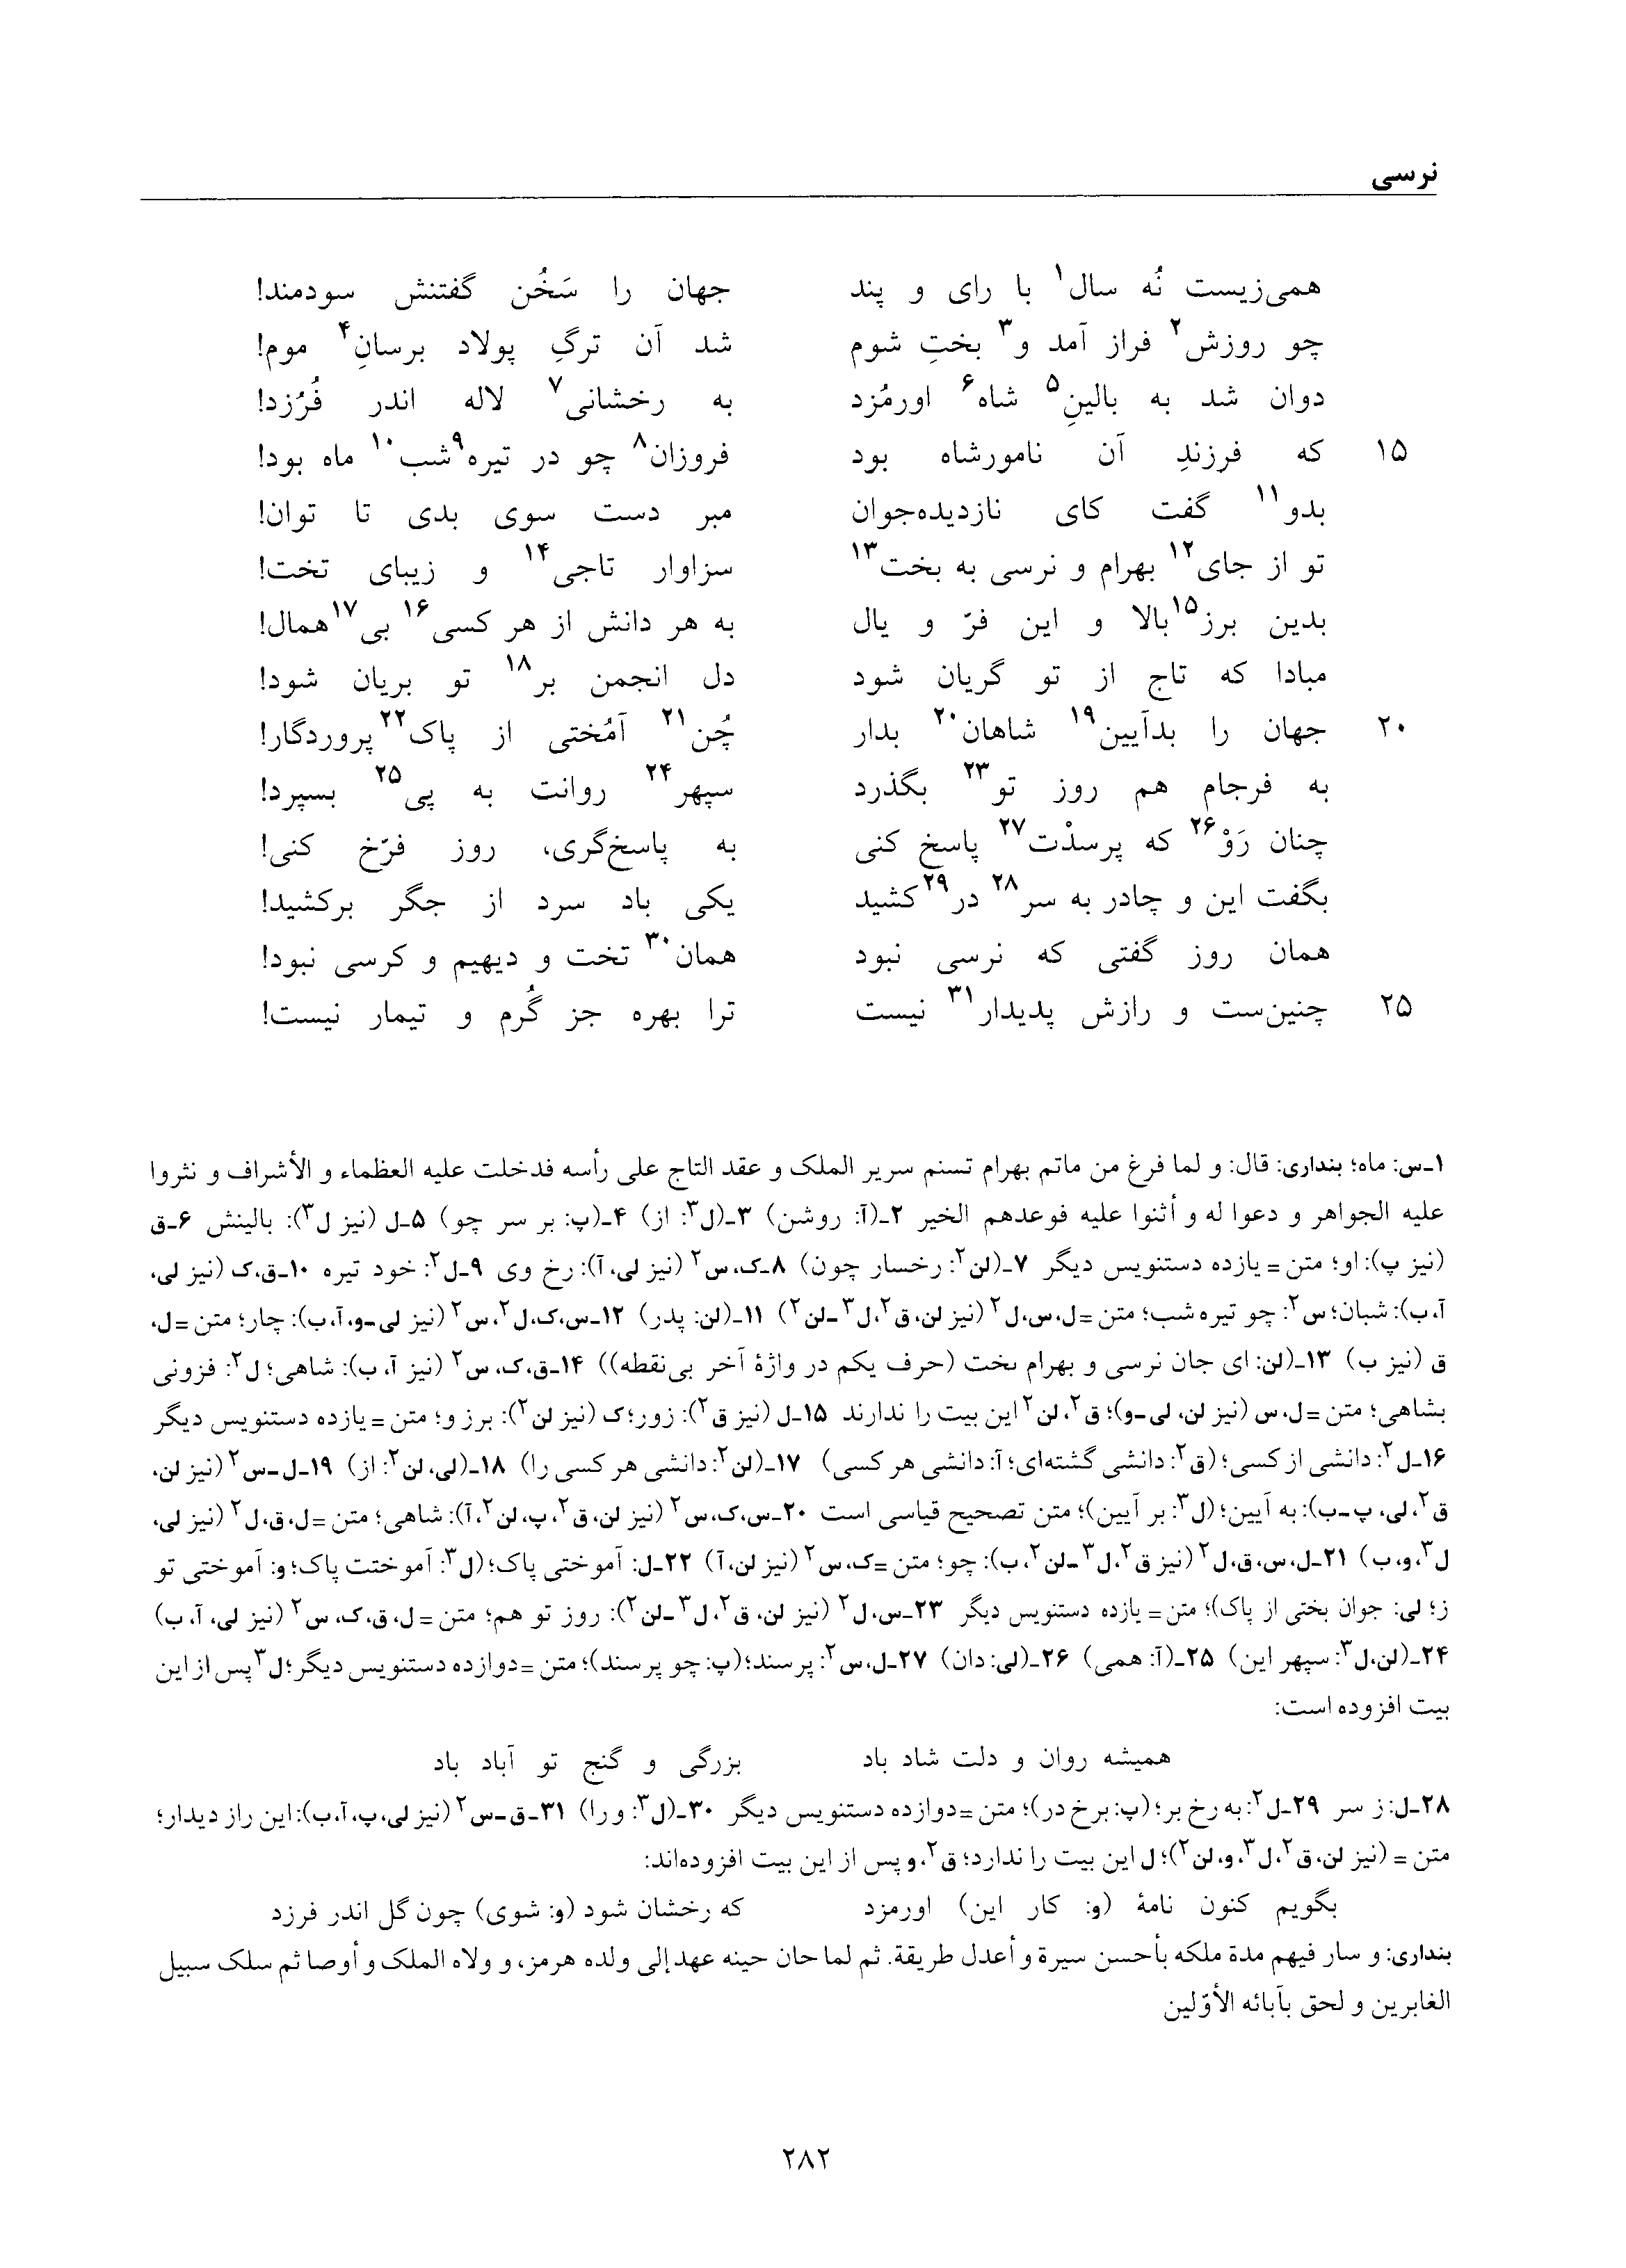 vol. 6, p. 282